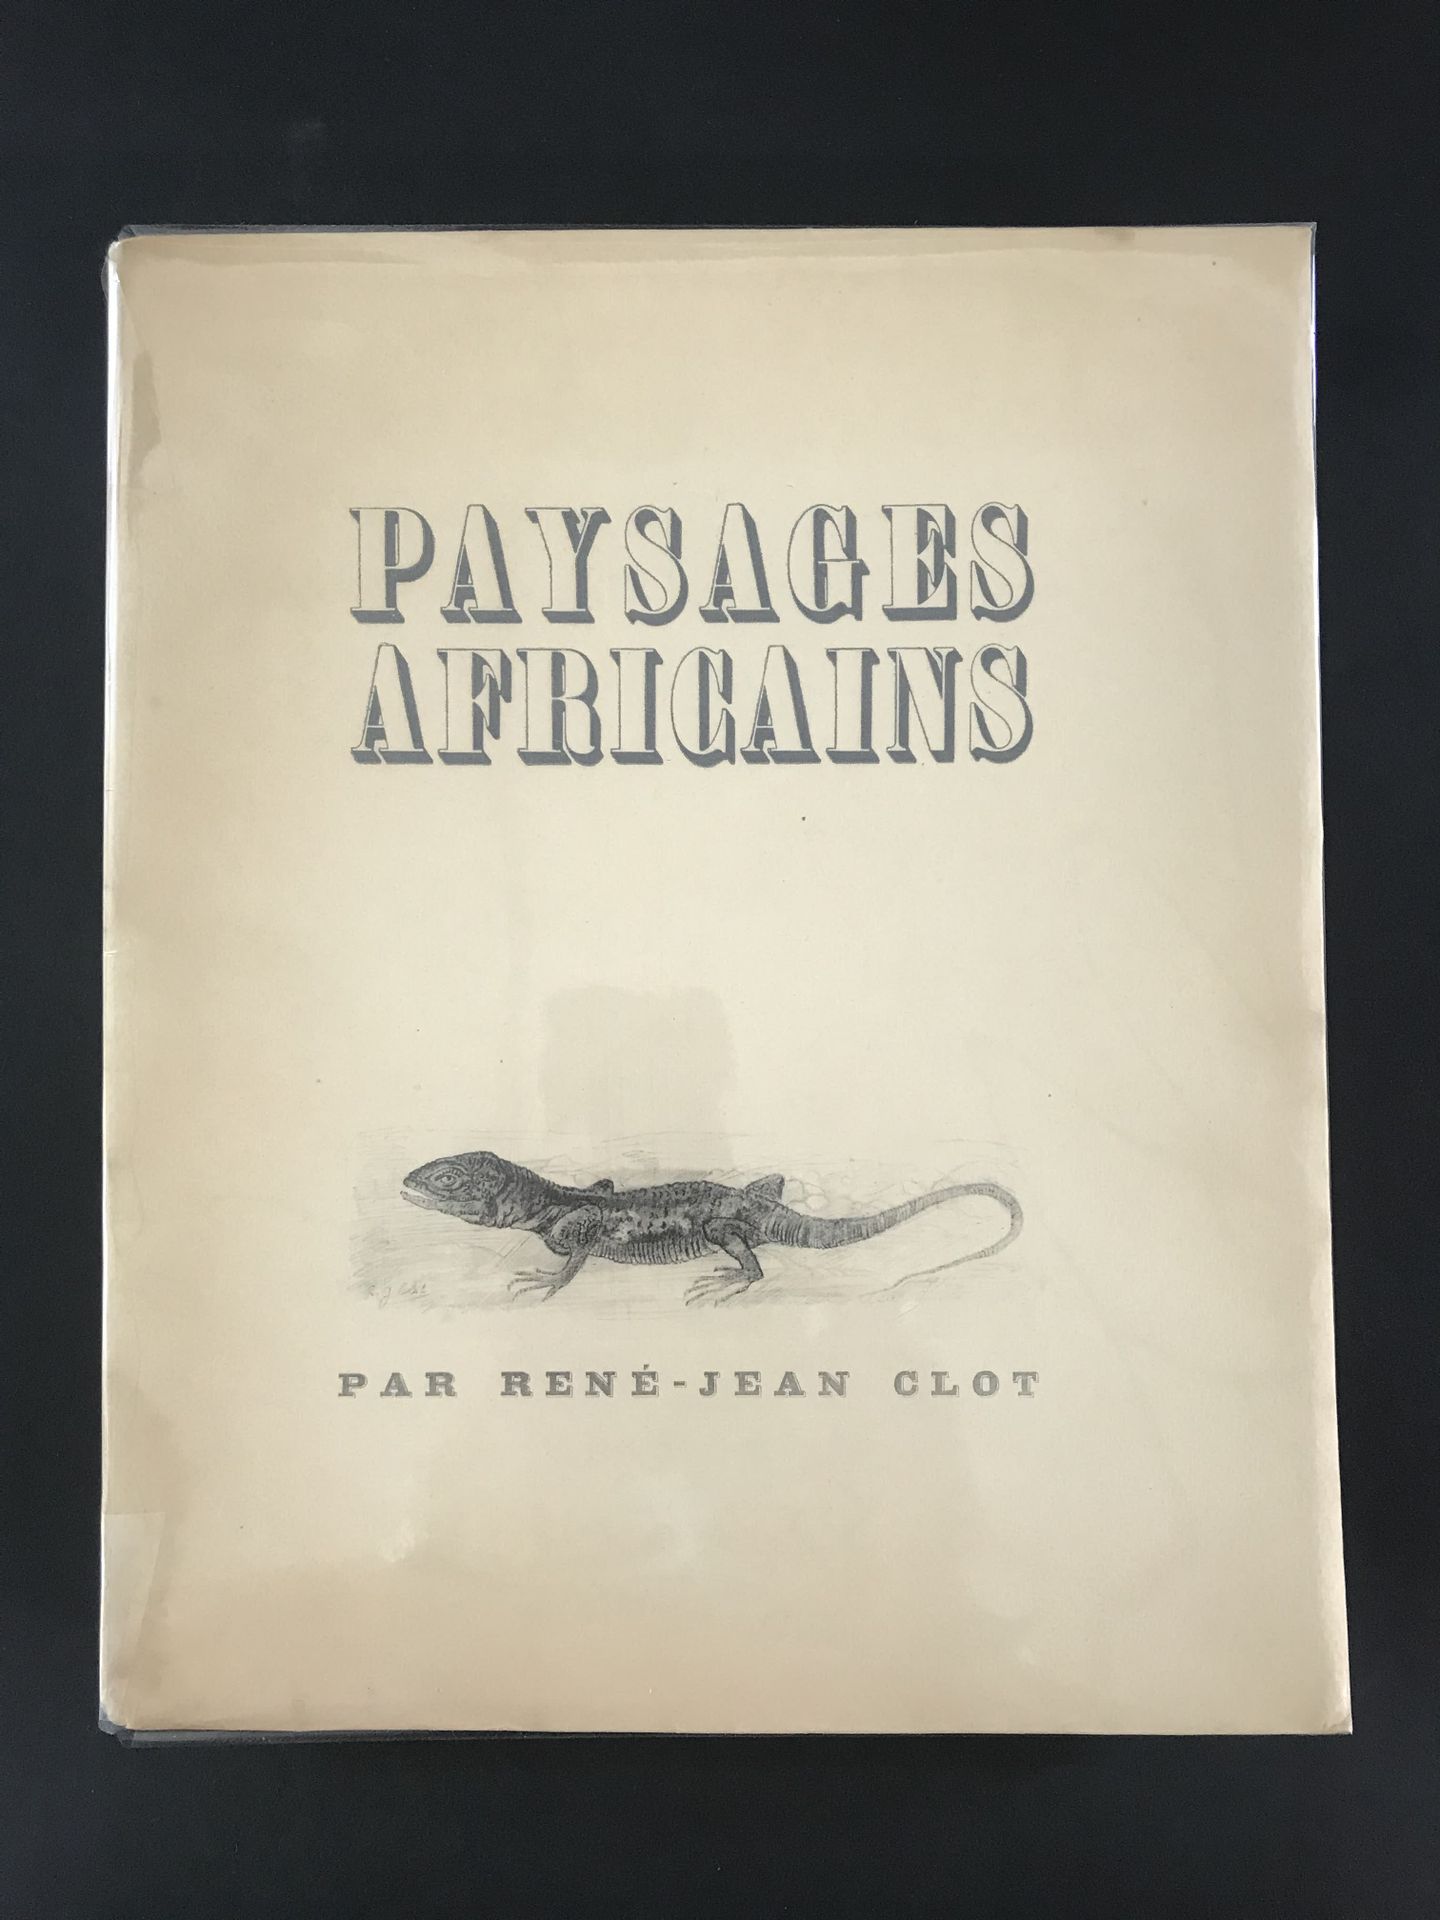 Null Paysages Africains 

Par René-Jean Clot

1945

Exemplaire n°30 sur velin 

&hellip;